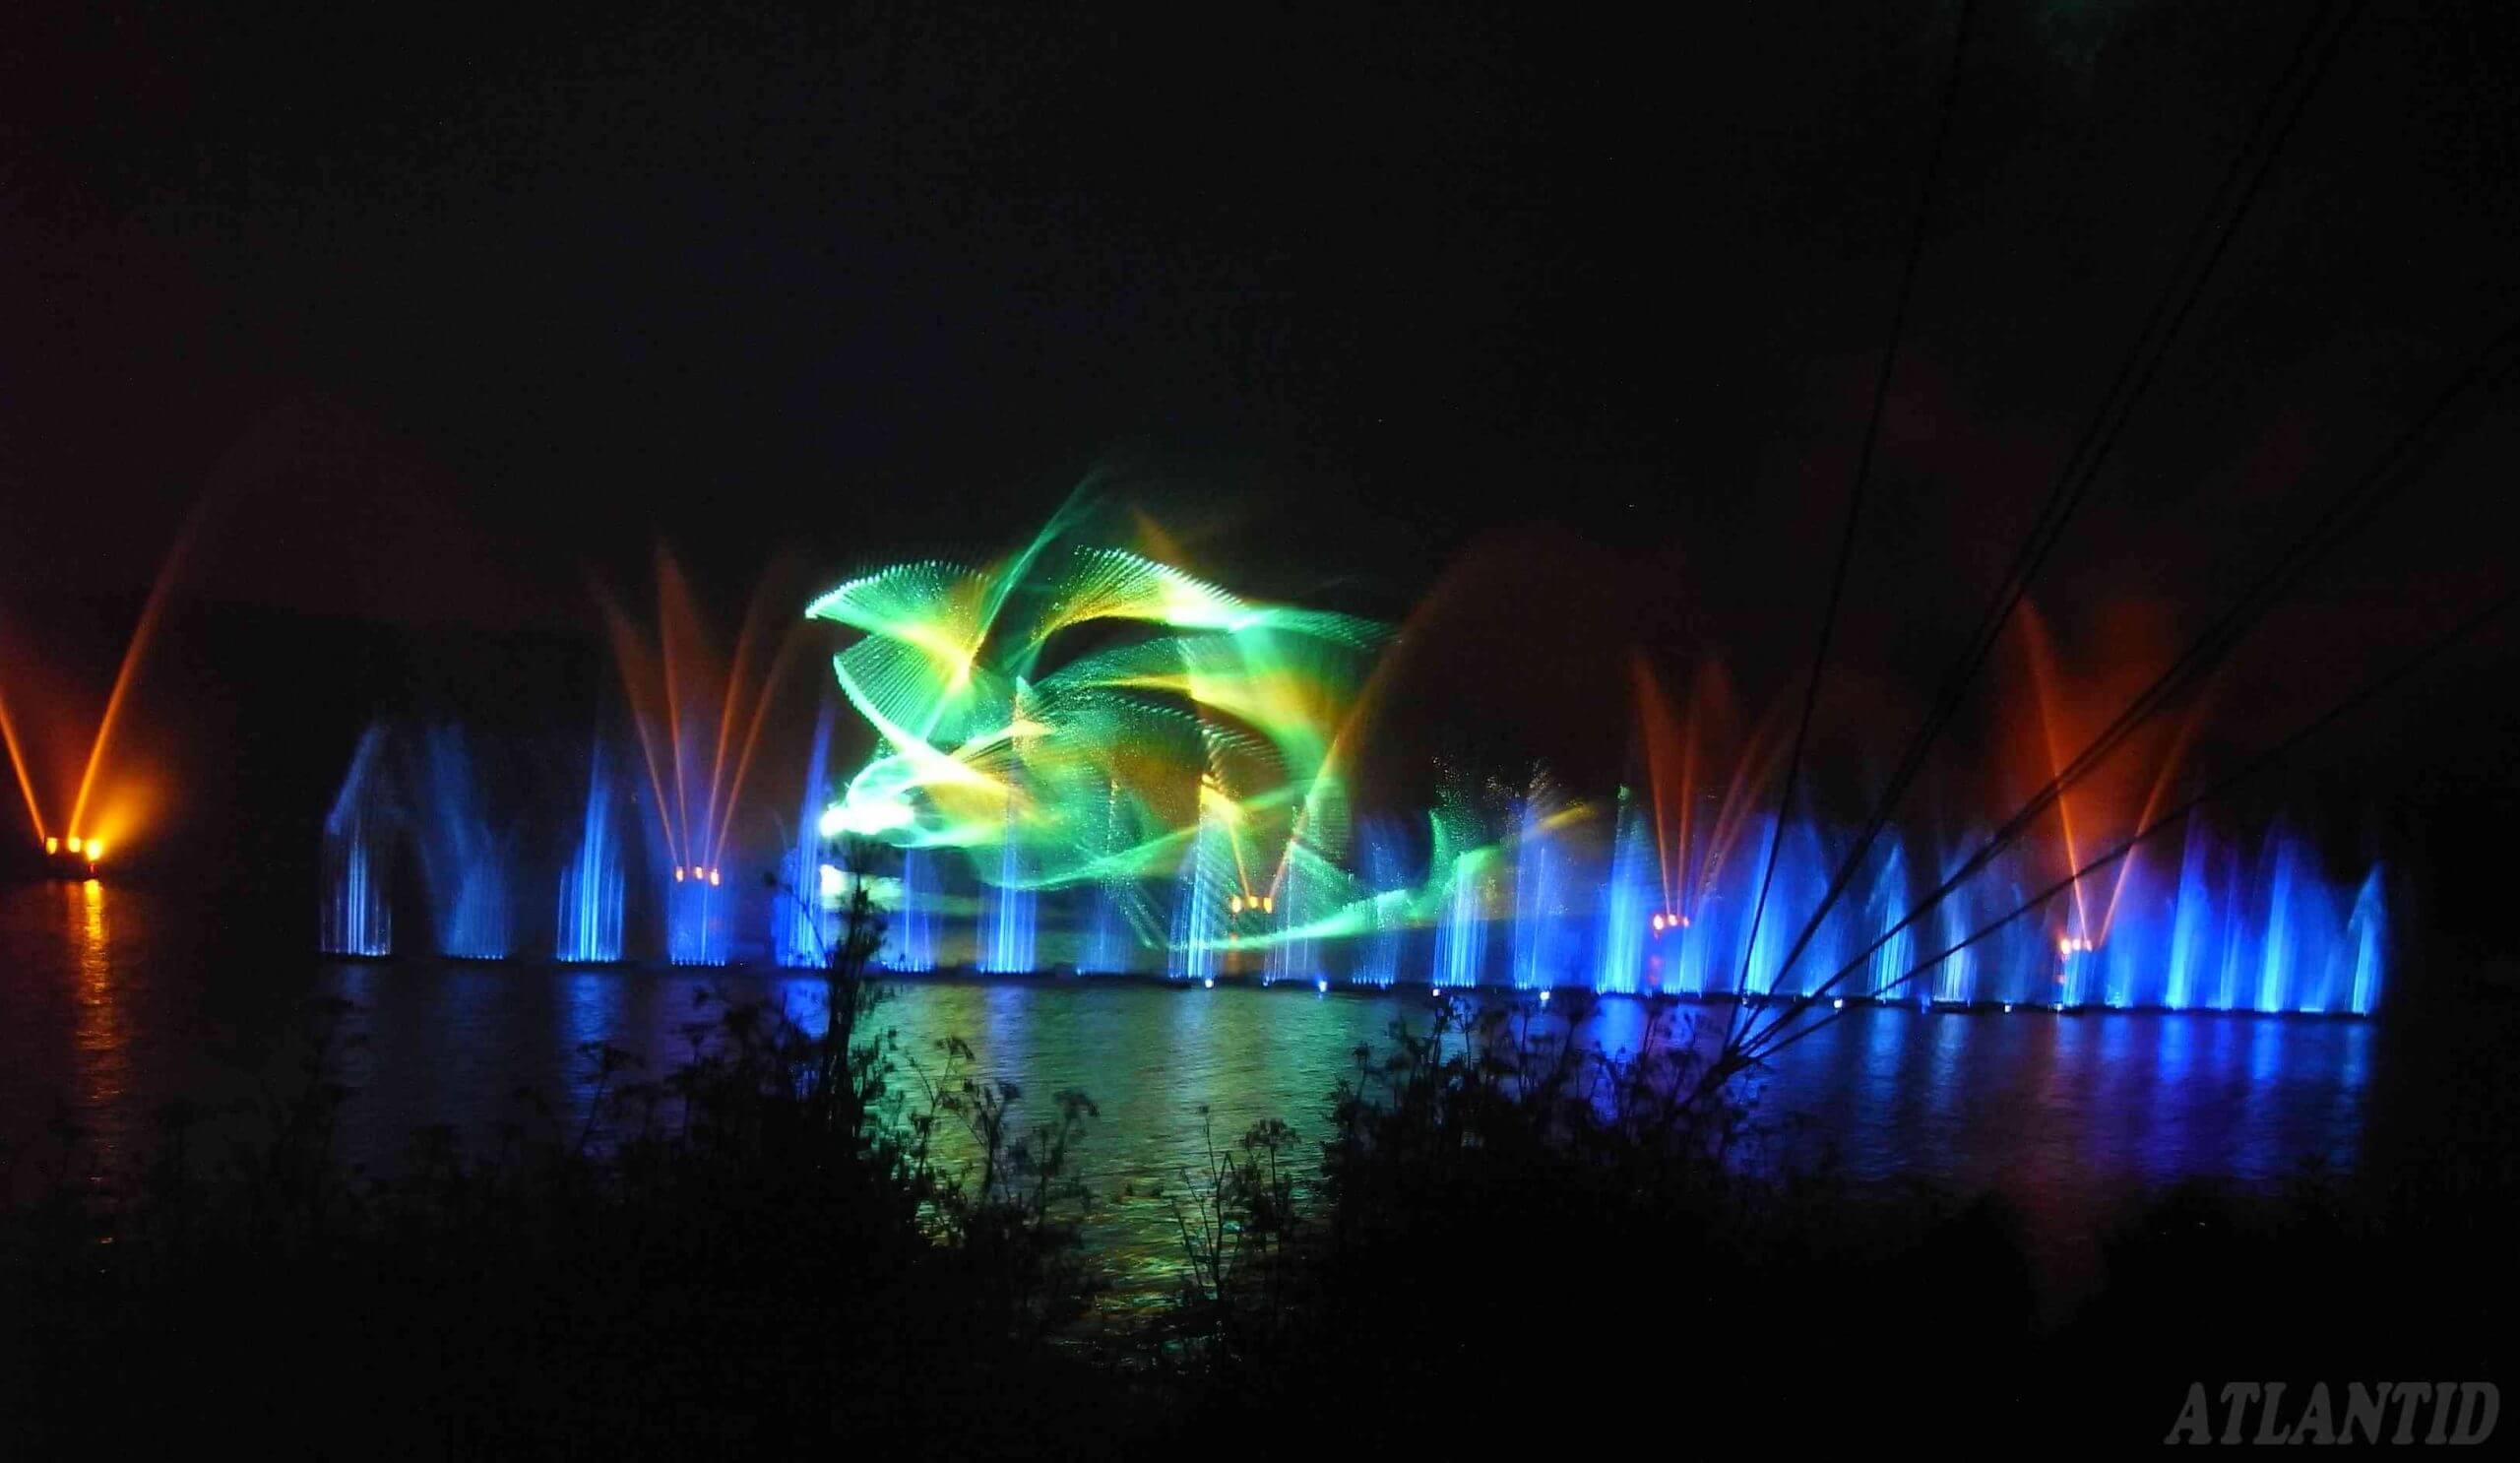 Atlantid - Espectáculo acuático con proyección de láseres multicolores